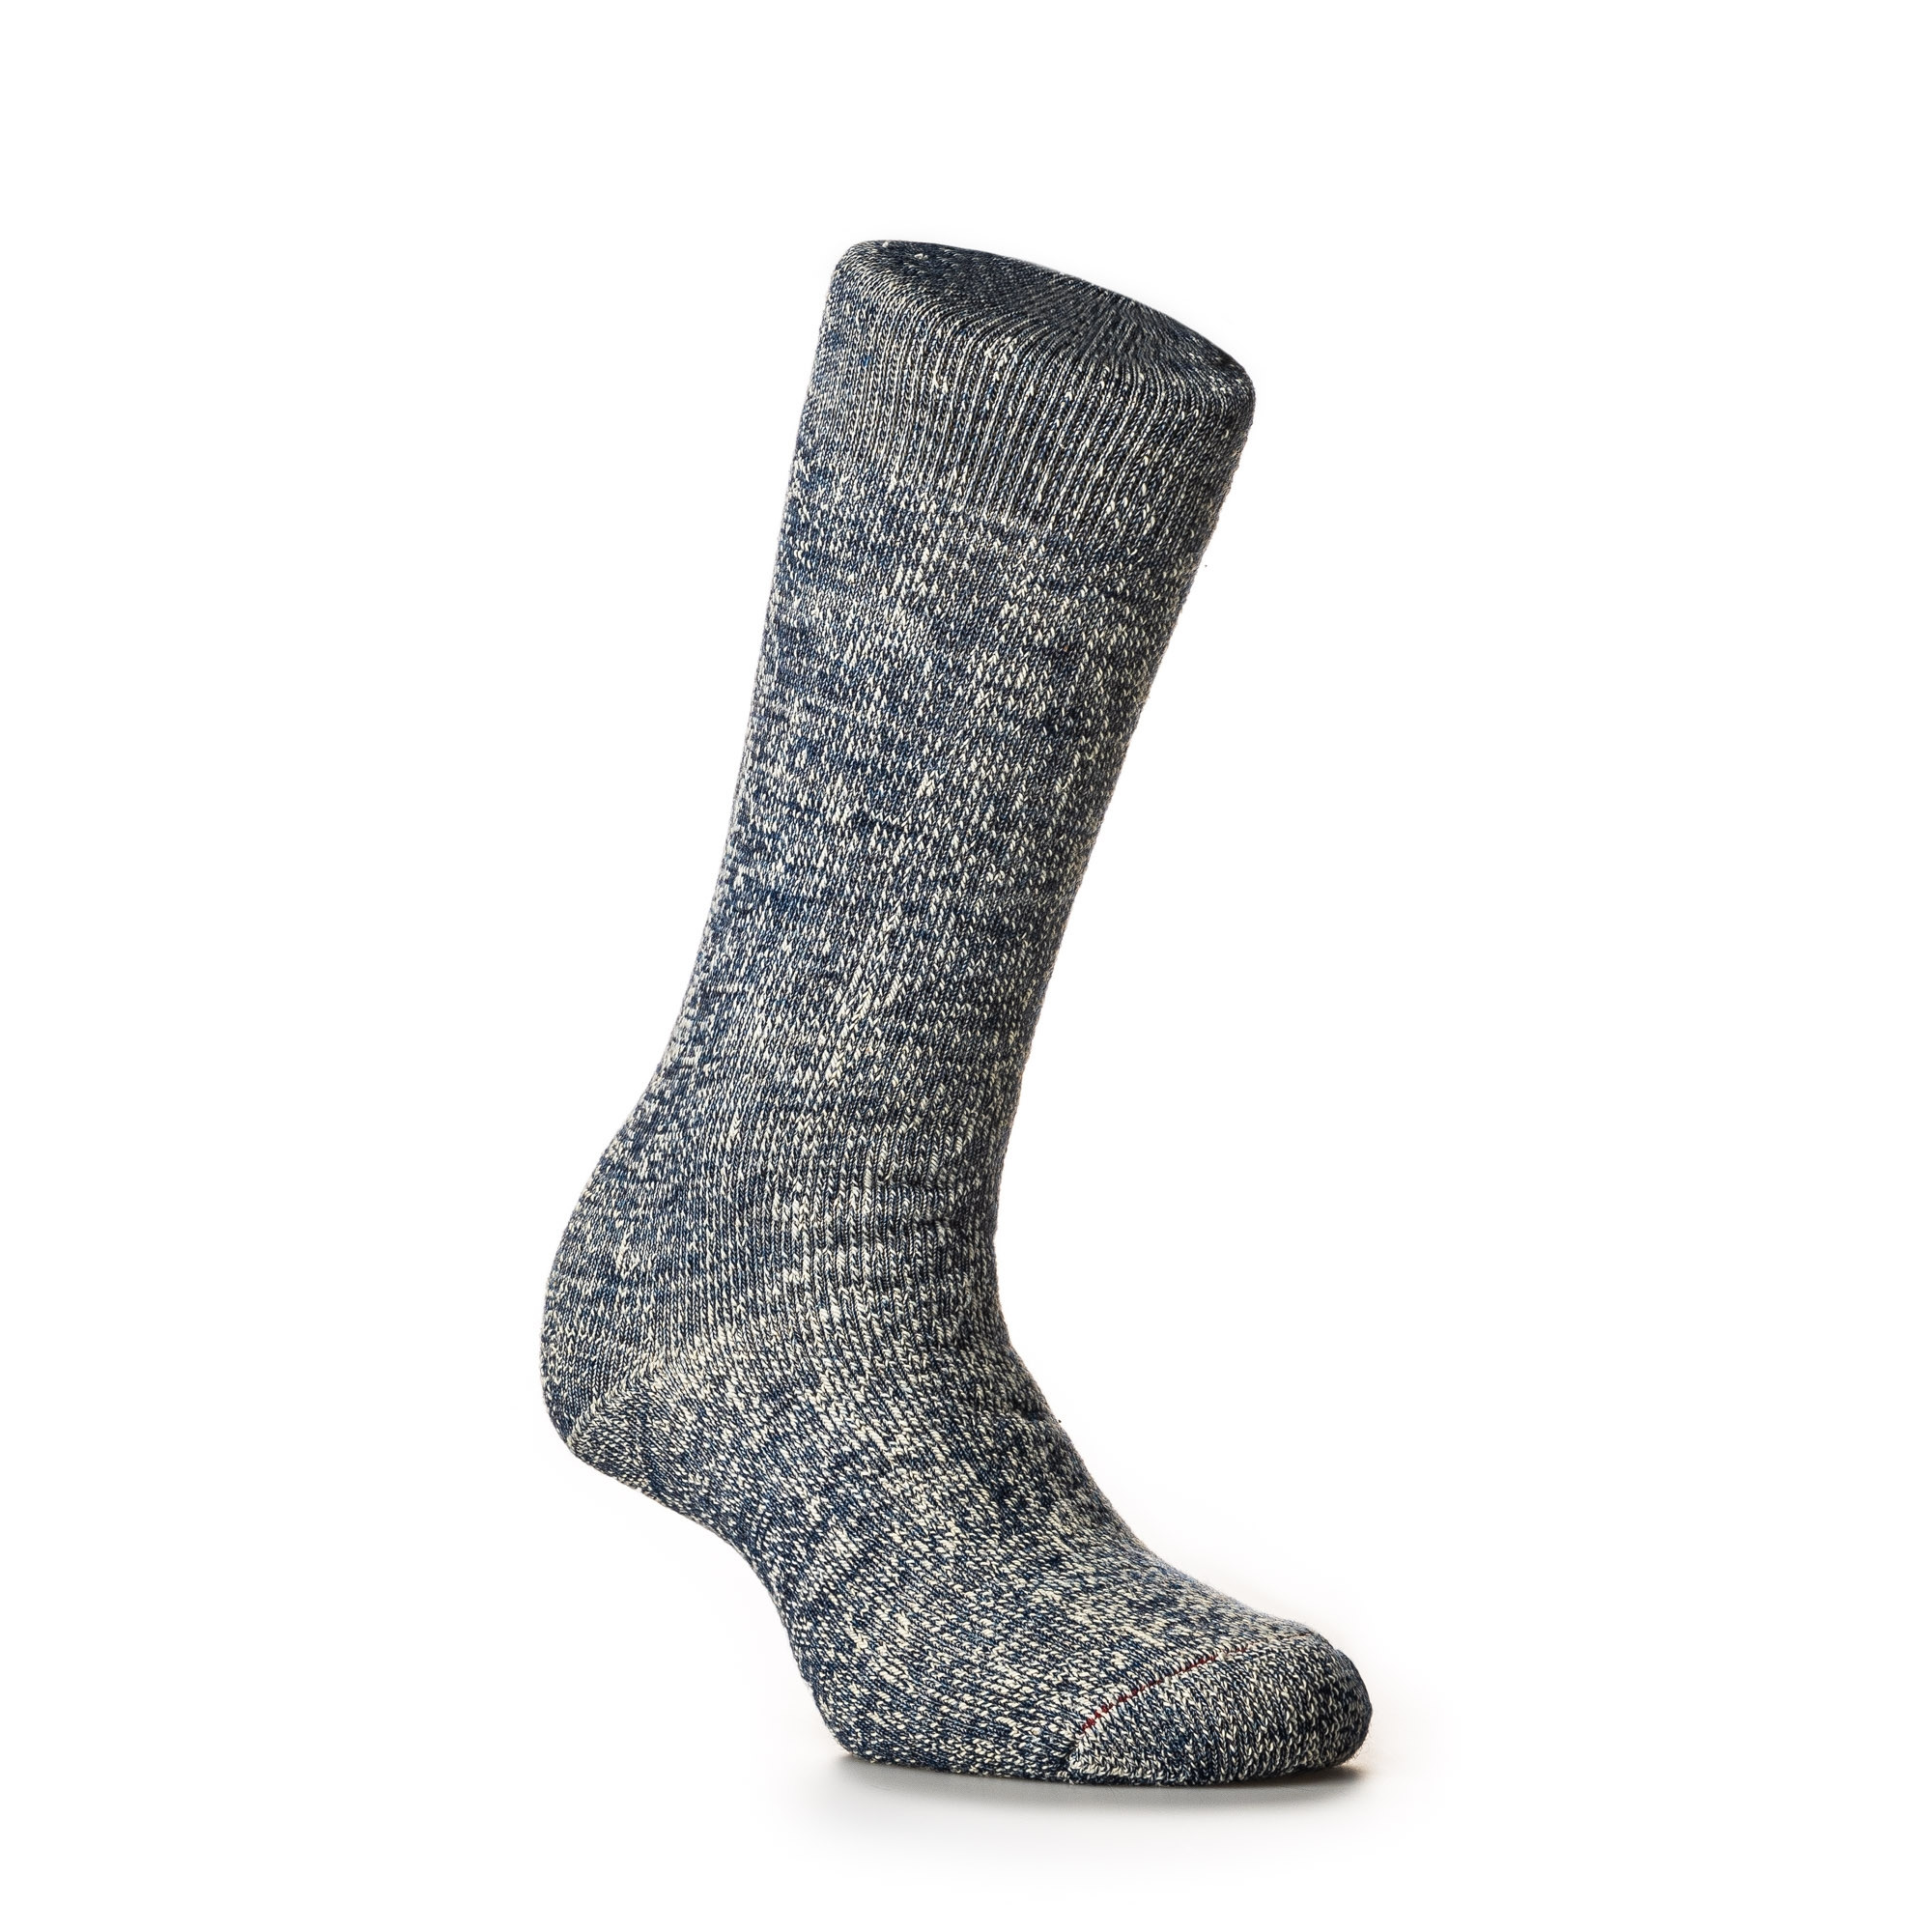 Rototo - Double Face Merino Wool Socks in Deep Ocean